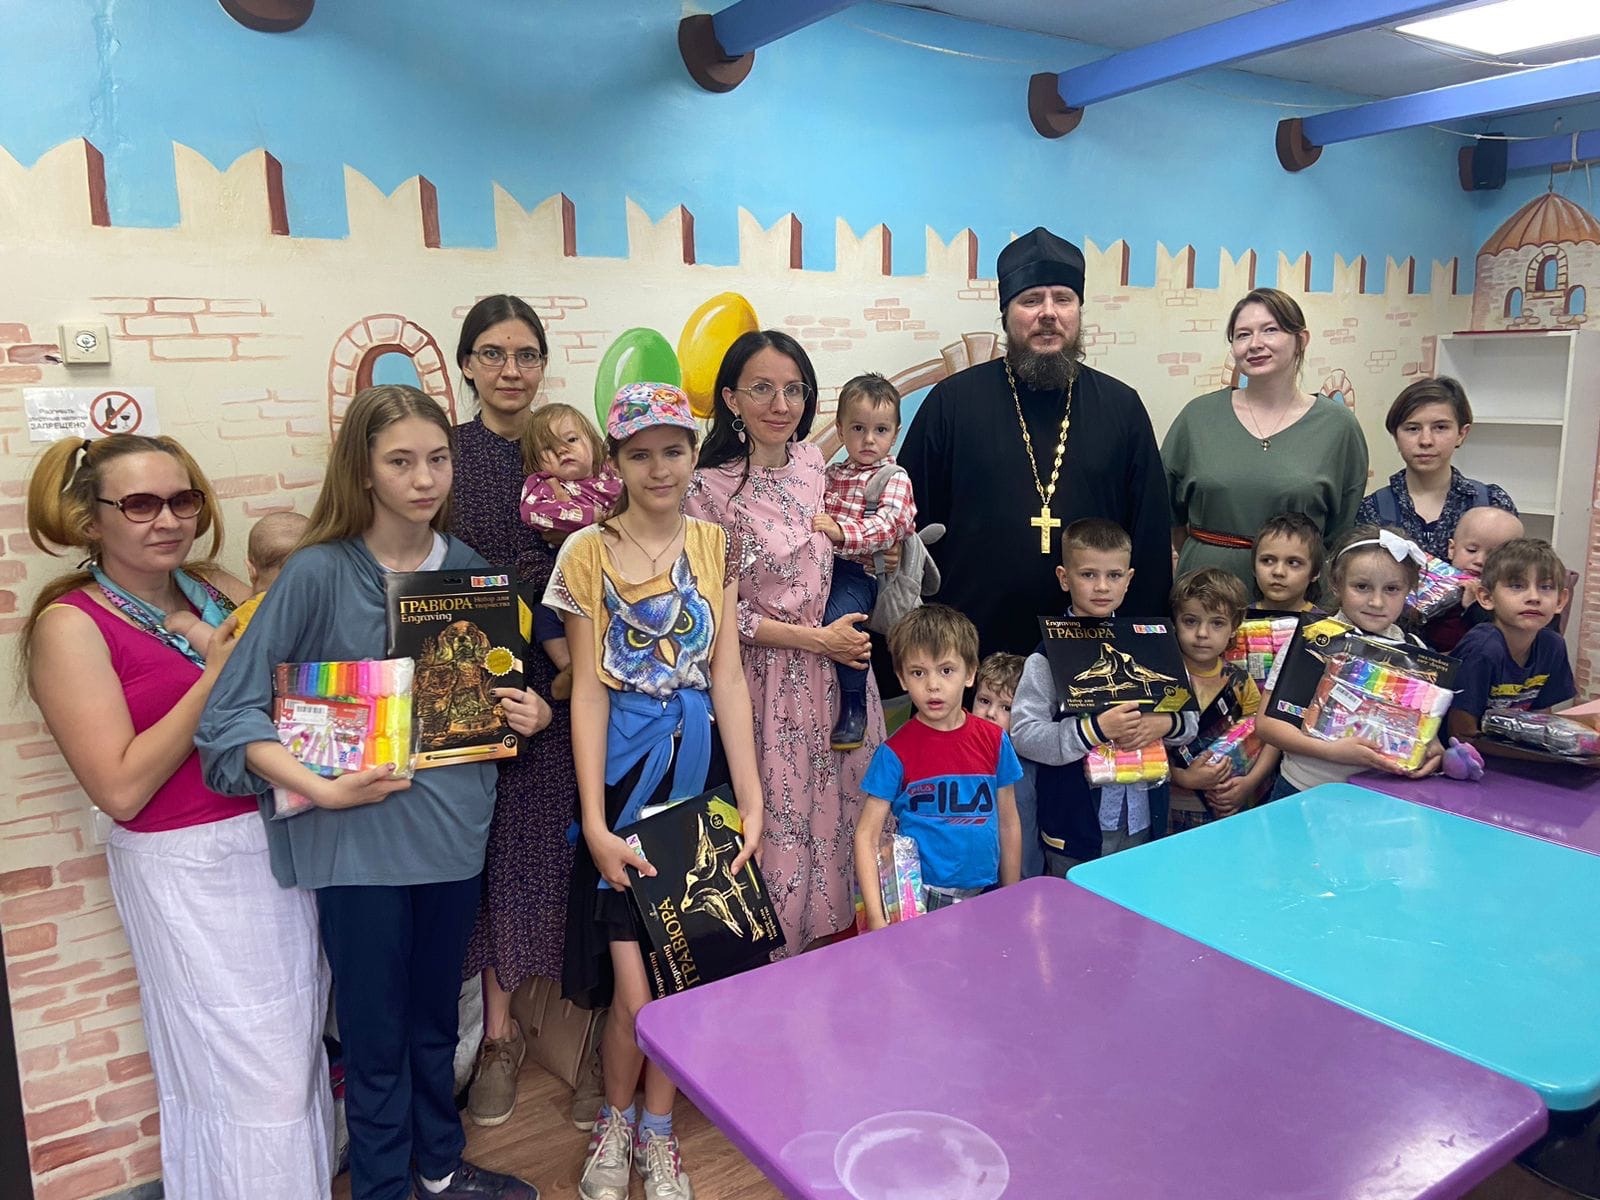 Руководитель Епархиальной комиссии по вопросам семьи провёл серию просветительских встреч с посетителями детского кафе в Казани